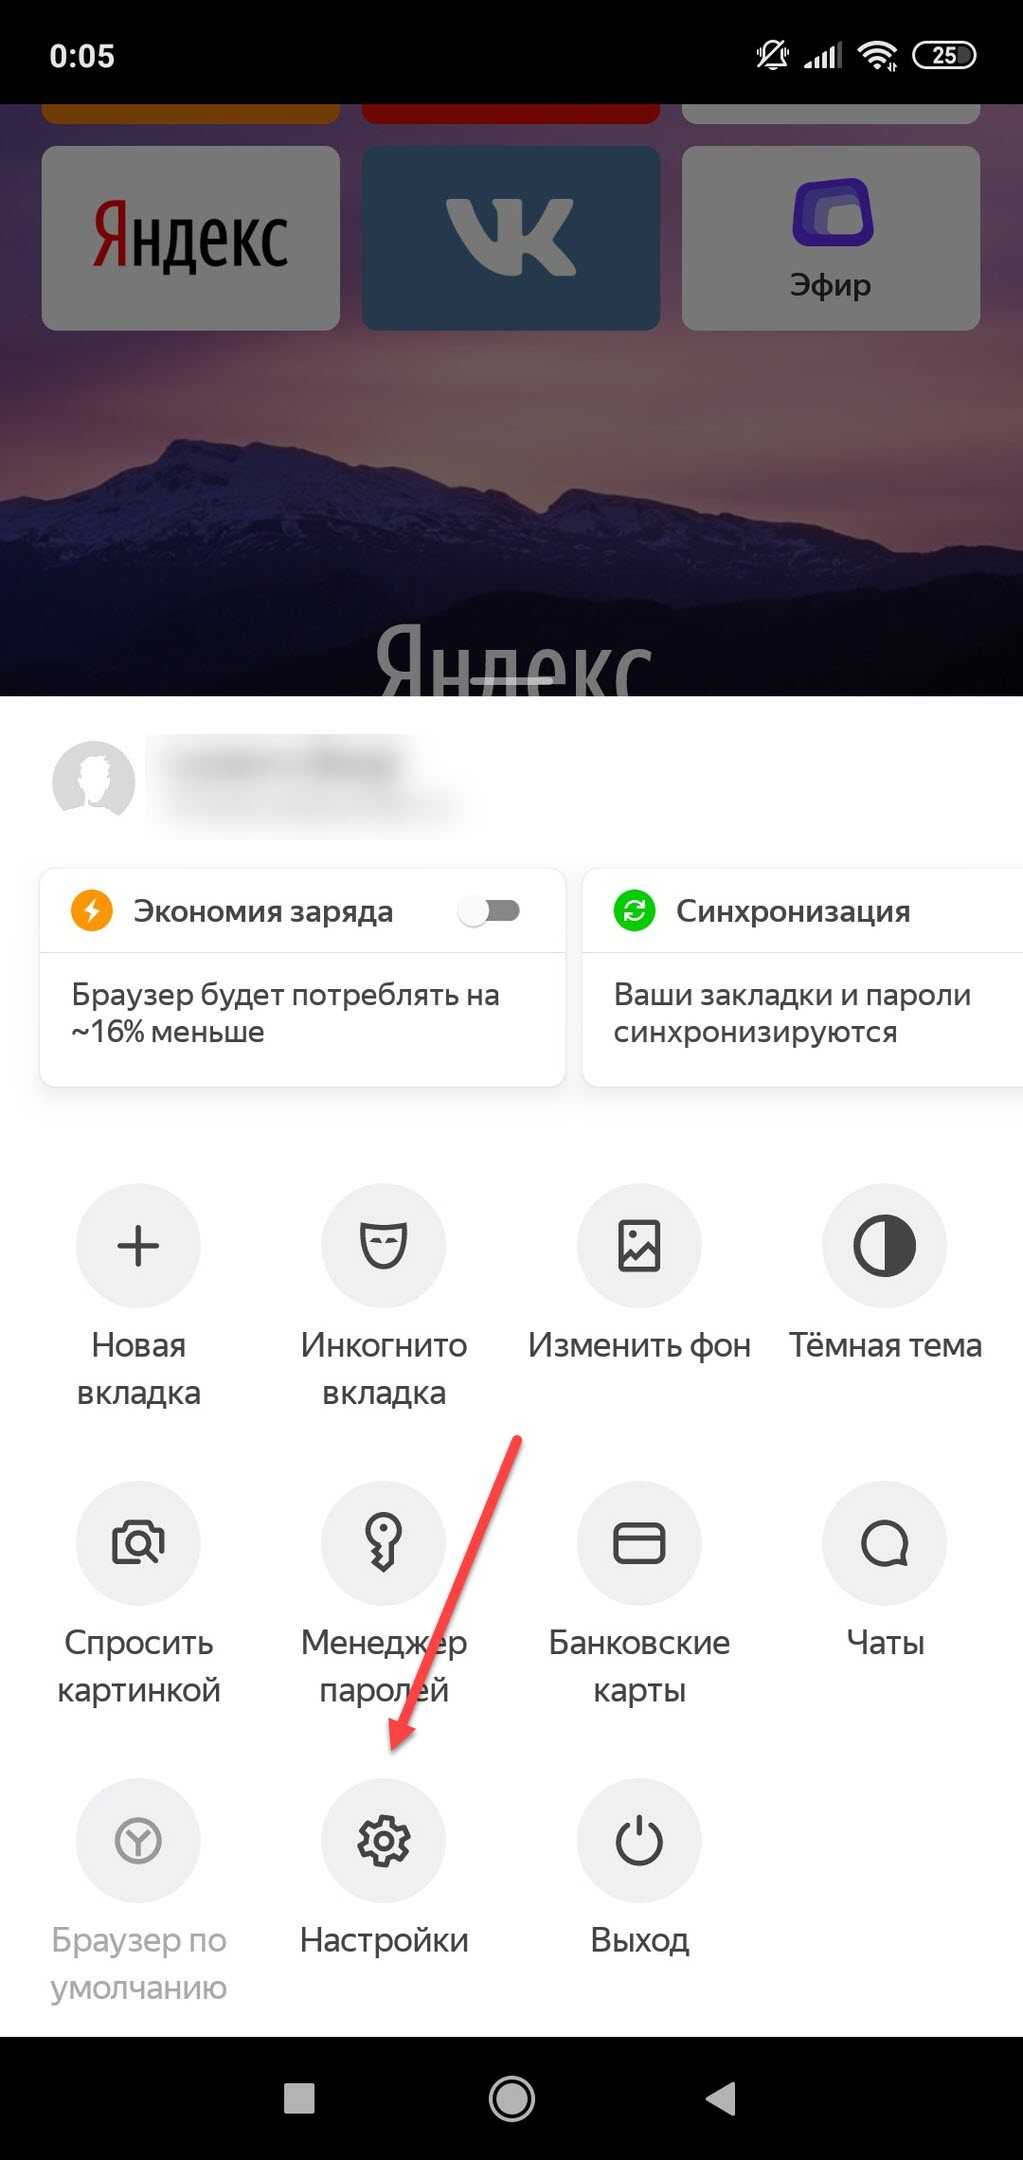 Как удалить поисковые запросы в телефоне. Очистить историю в Яндексе на телефоне. Как очистить историю в Яндексе на телефоне. История запросов в Яндексе на телефоне. Как удалить историю в Яндексе на телефоне.